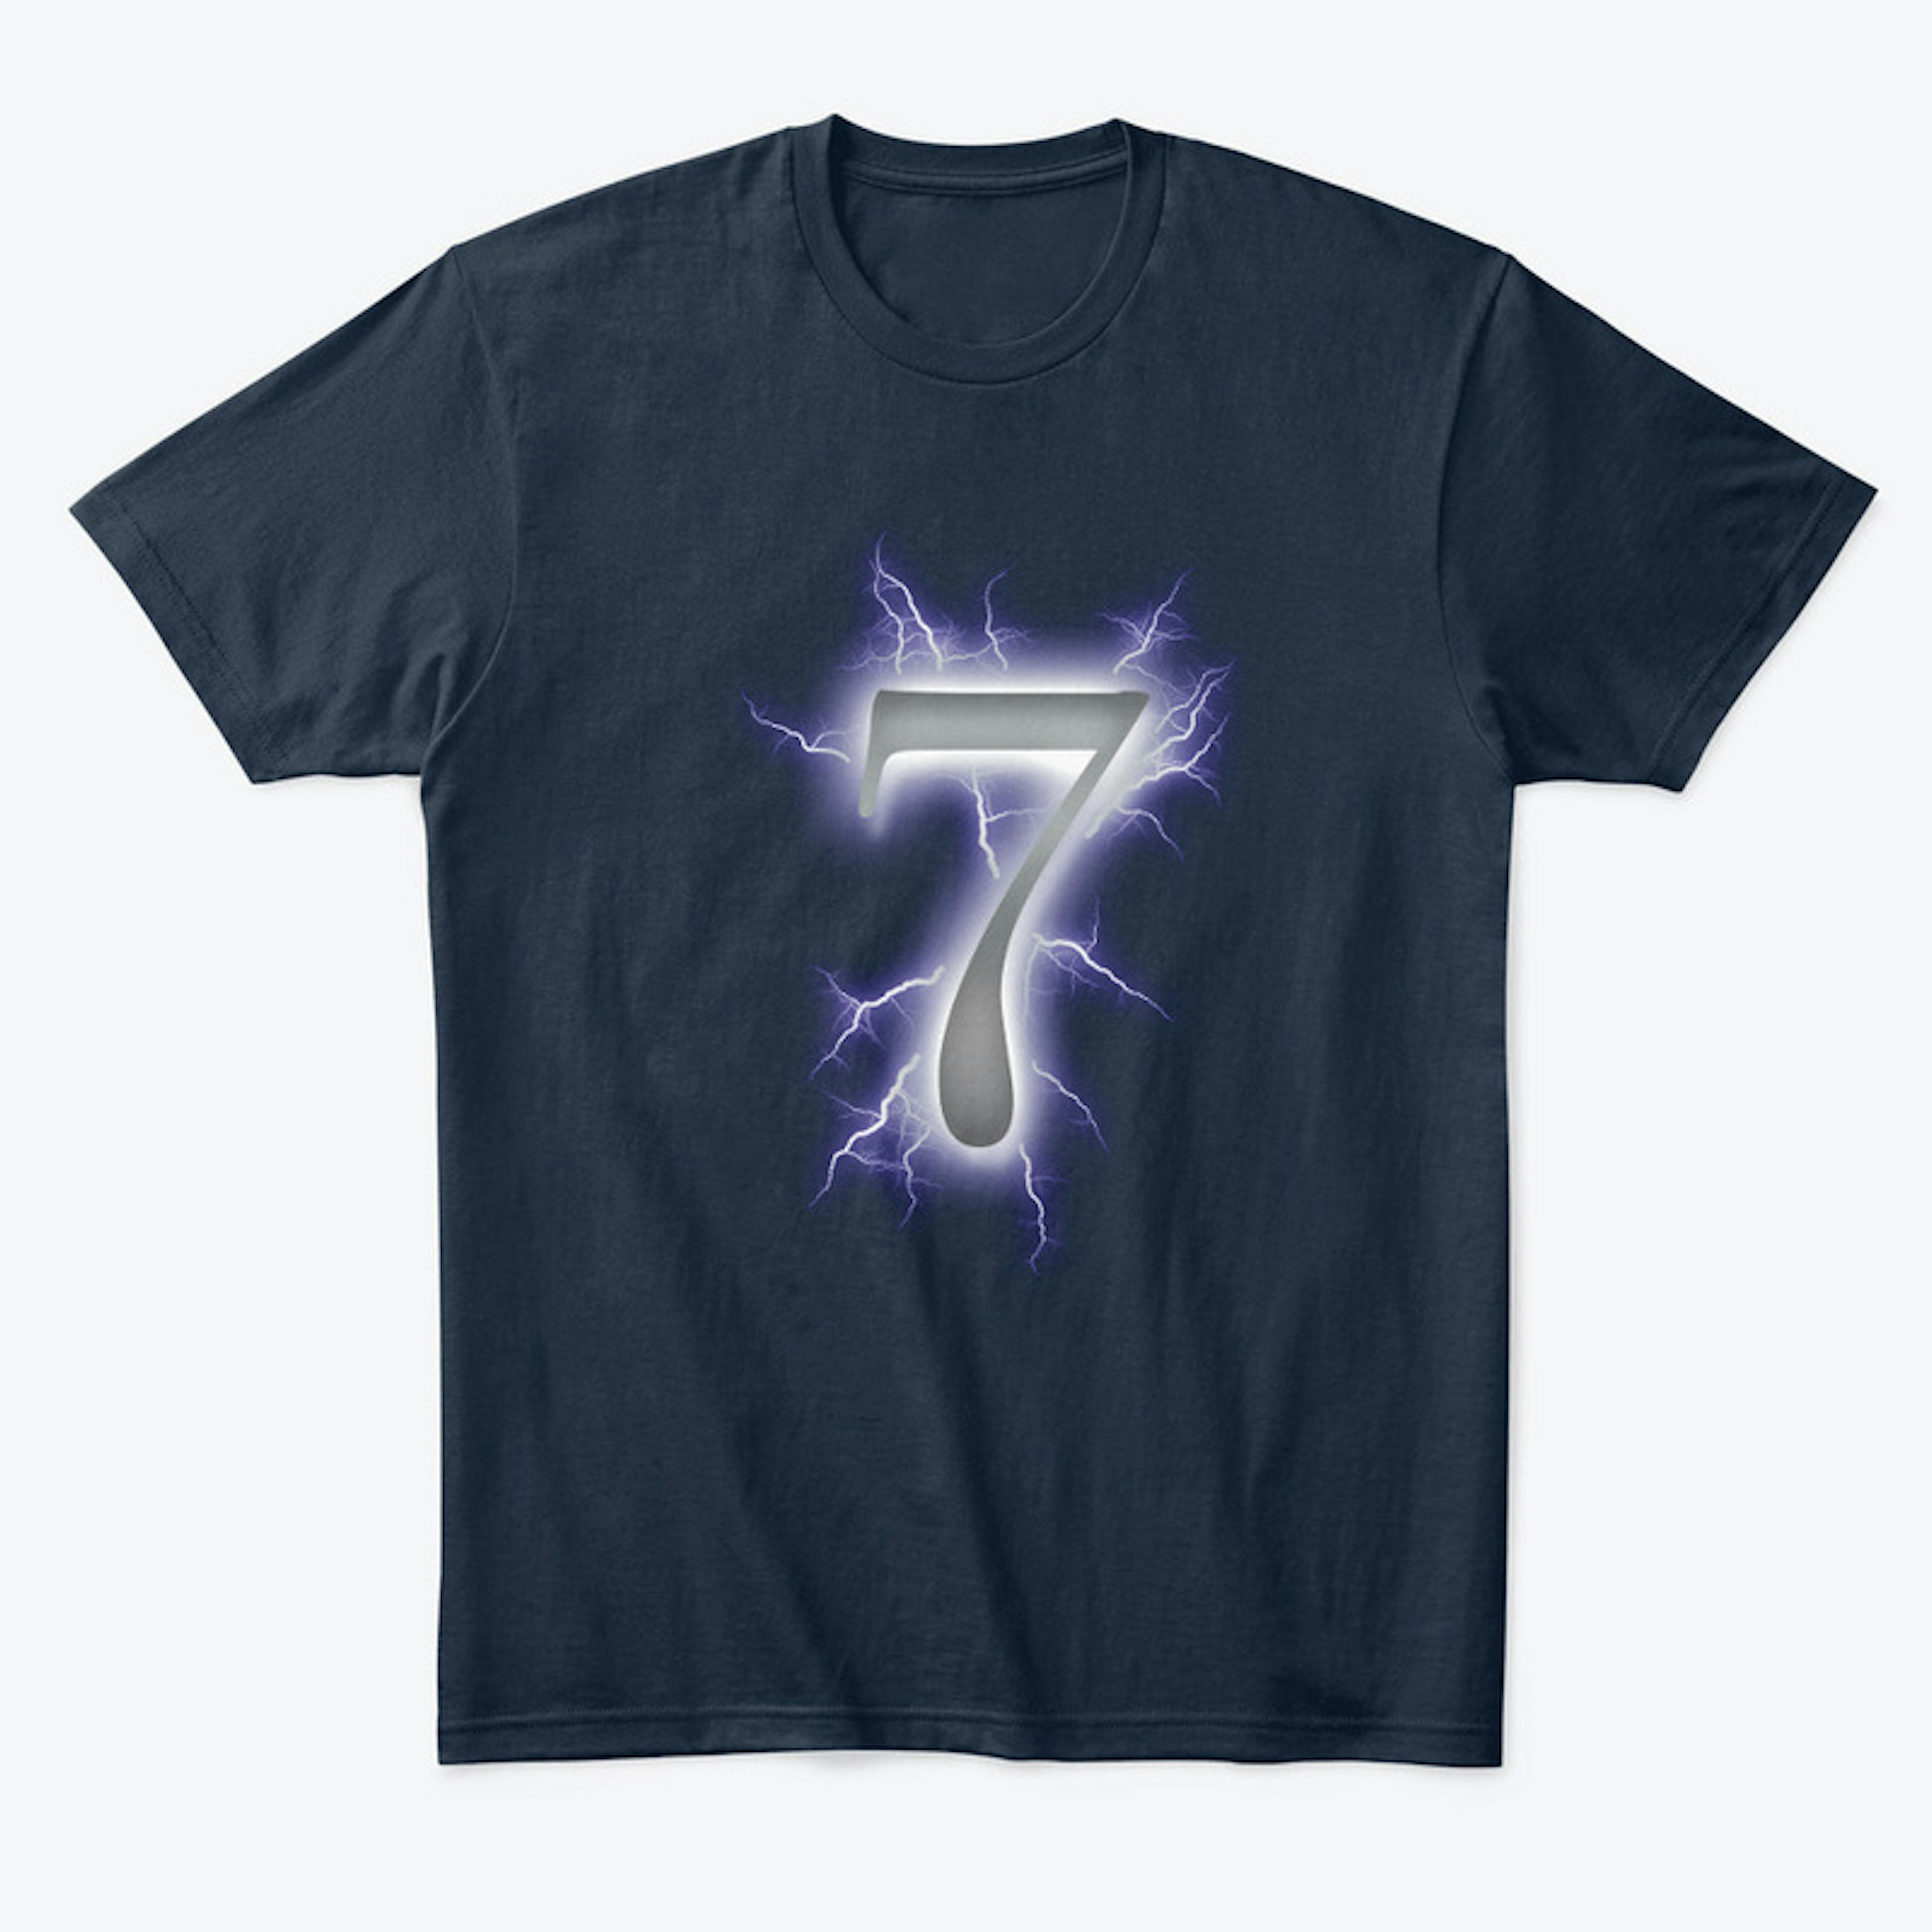 The Nat Makes 7 T-shirt